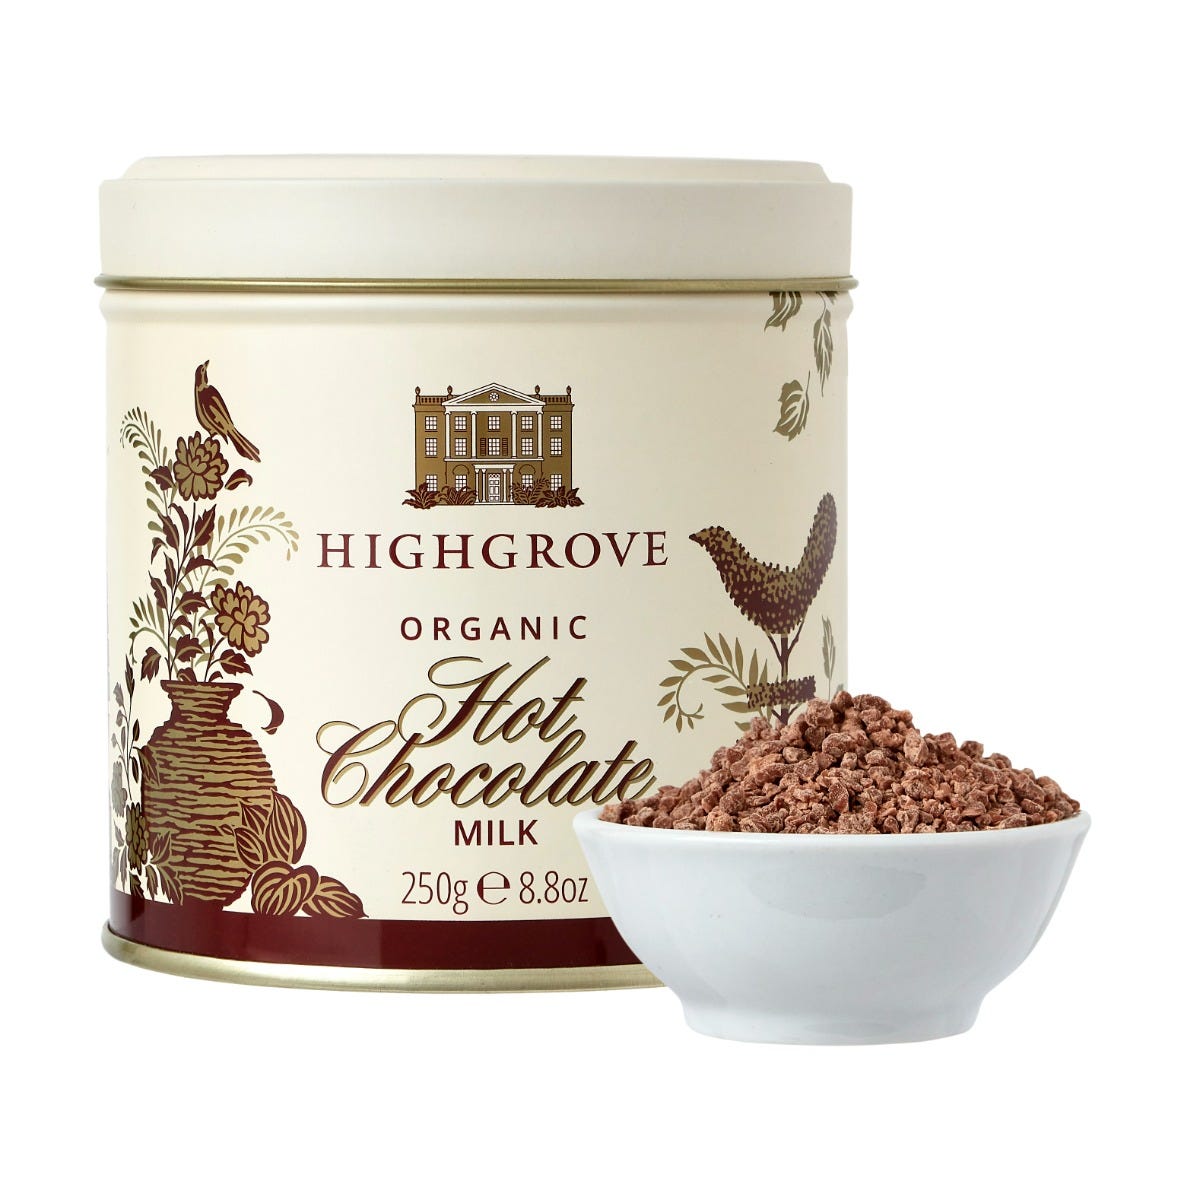 Highgrove Organic Milk Hot Chocolate, 250g, Fortnum & Mason